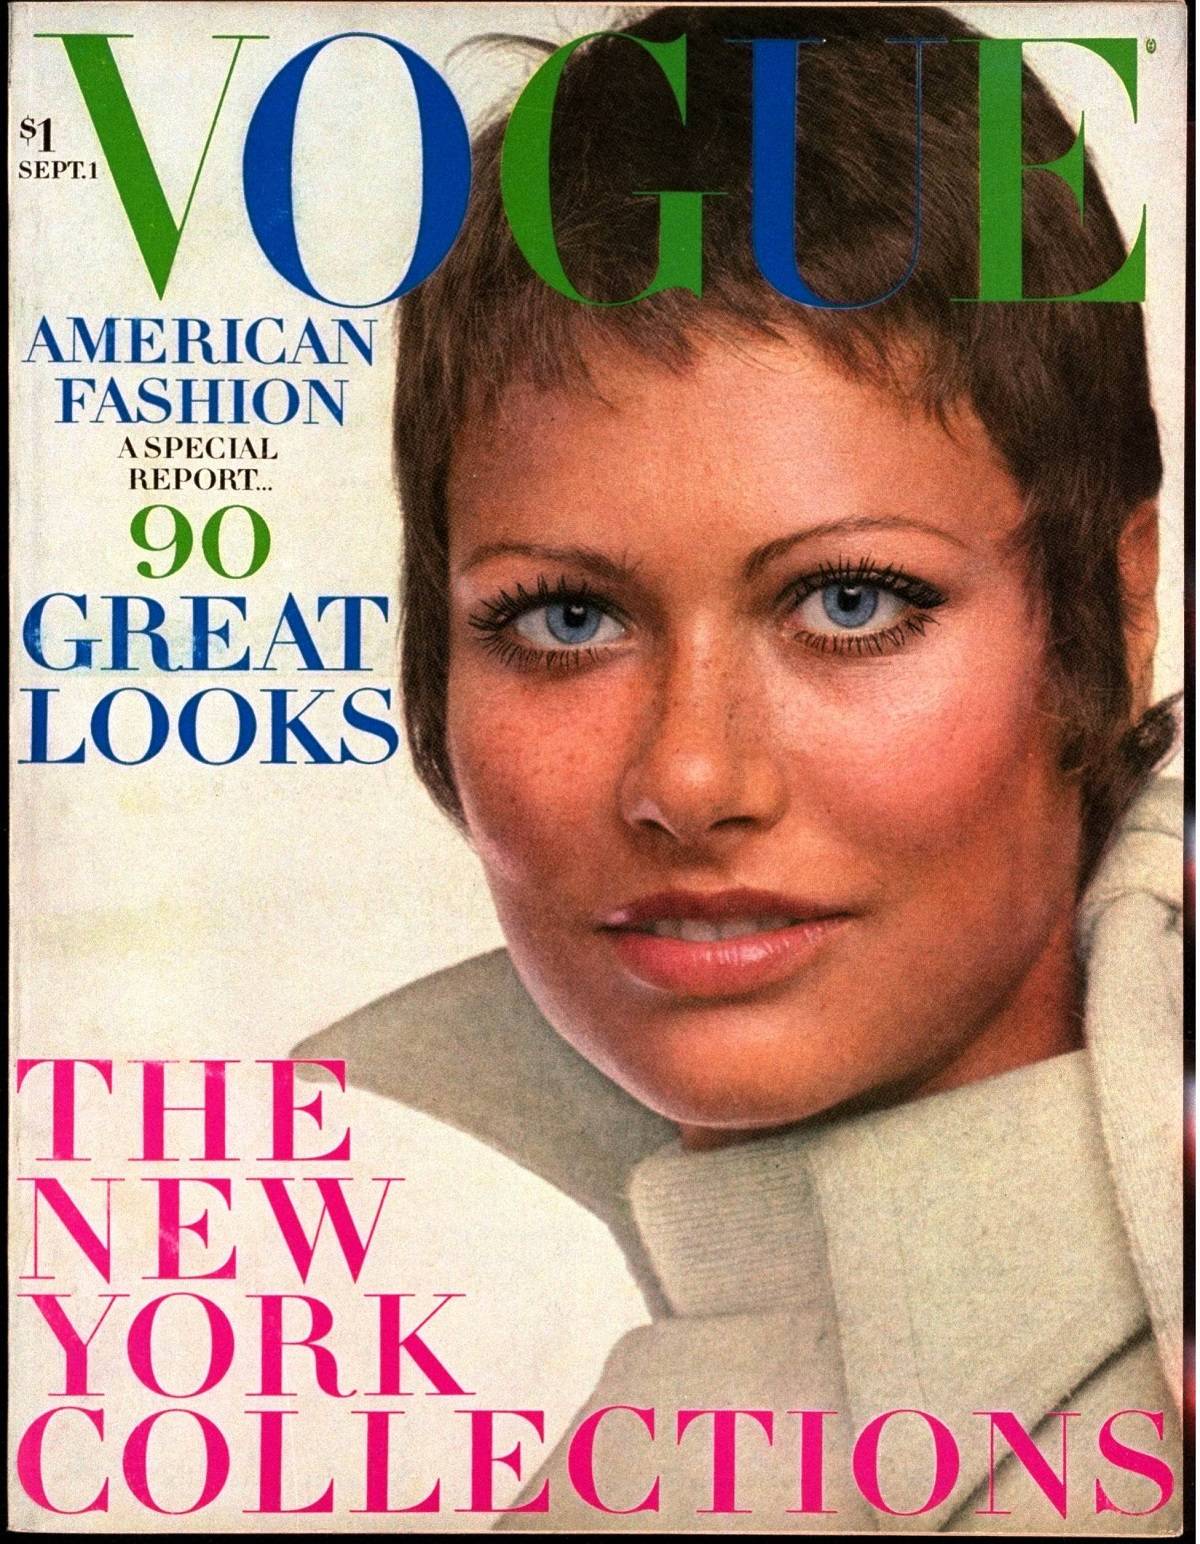 Okładka wrześniowego numeru Voguea z 1969 roku